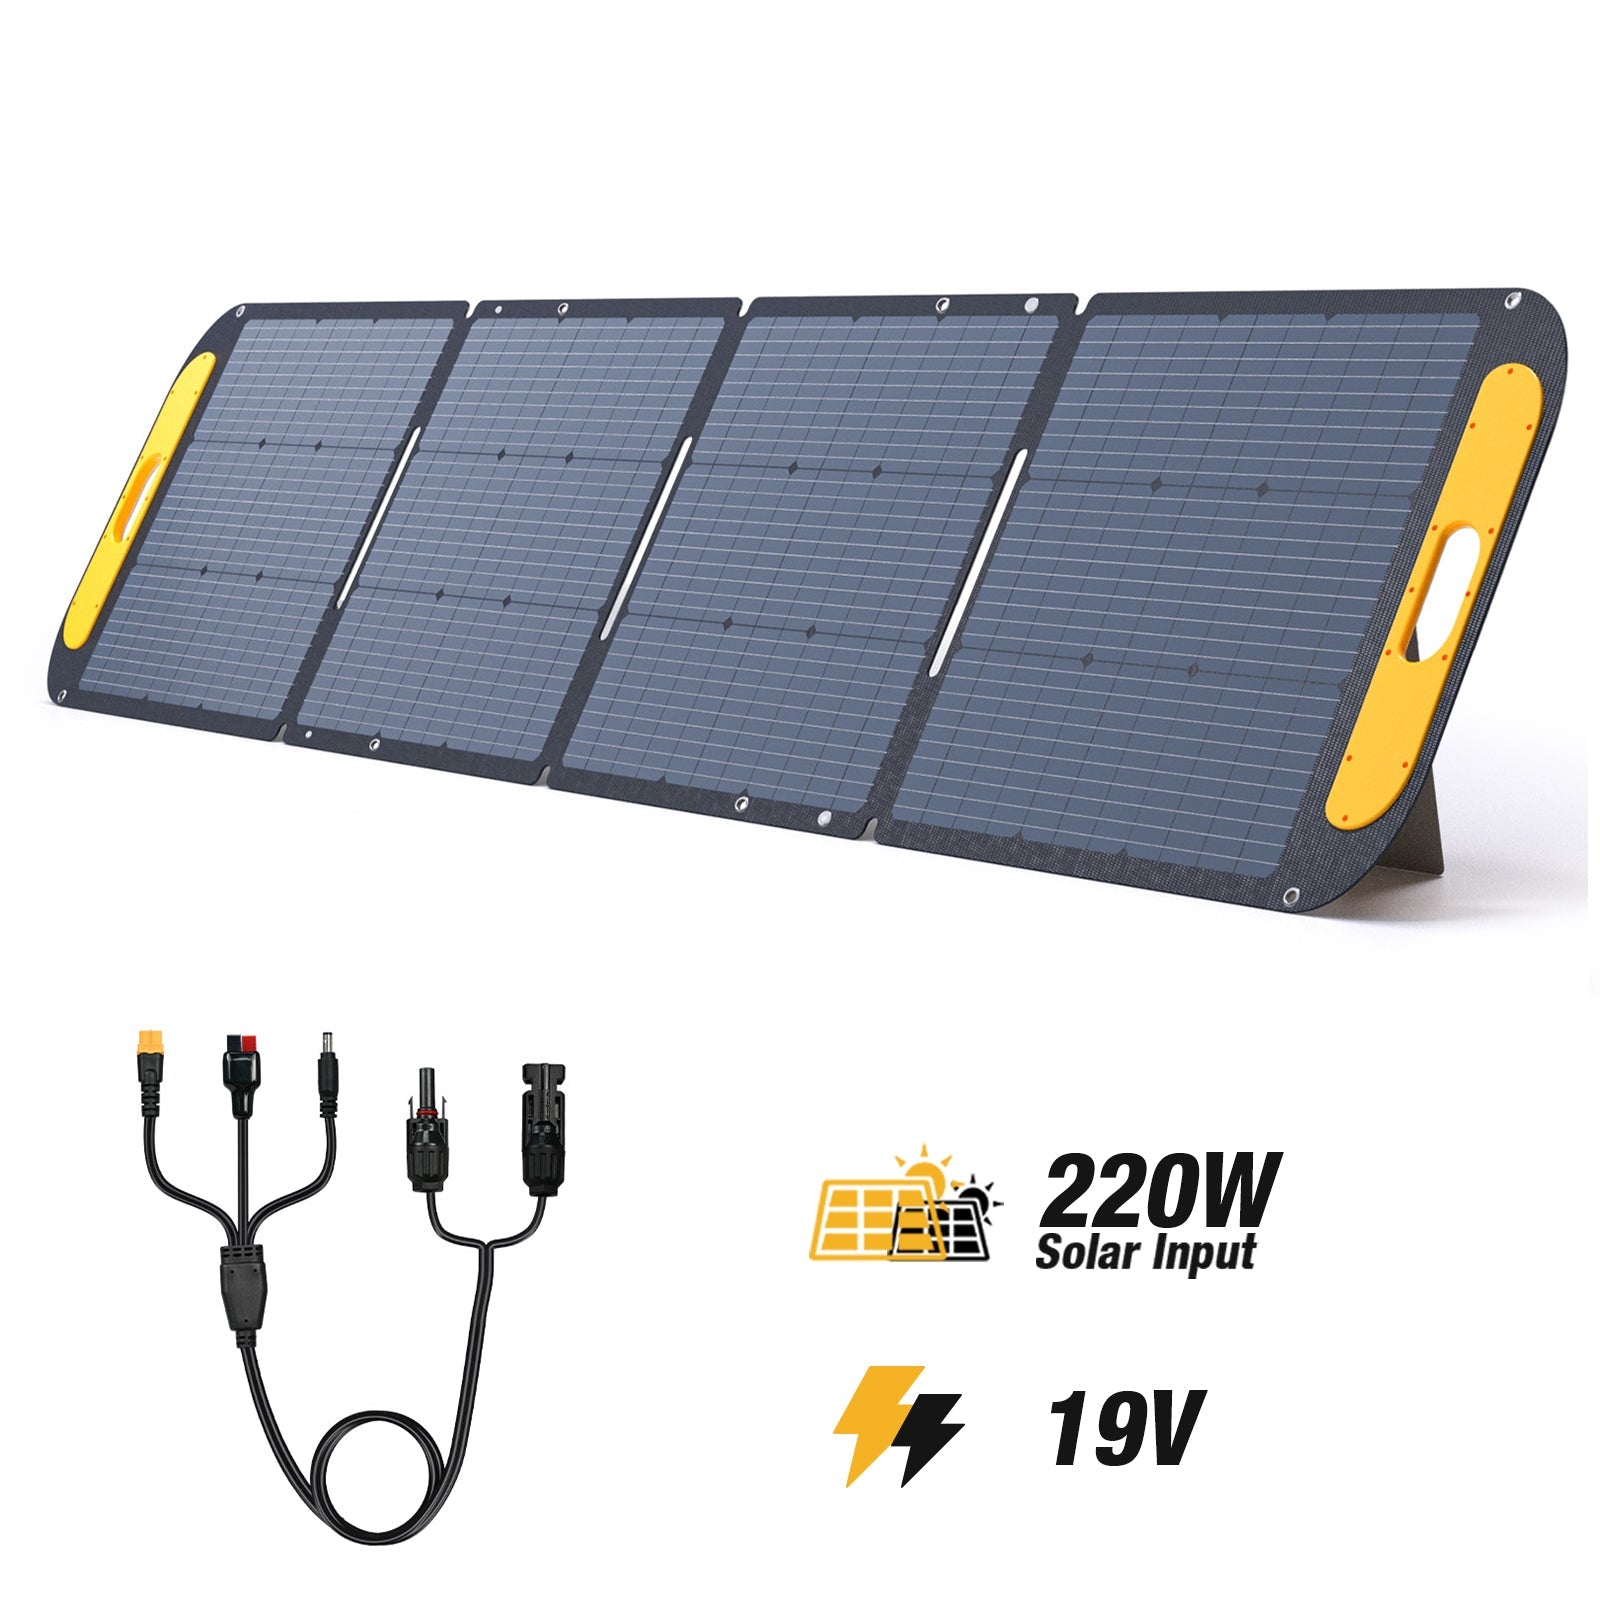  vs220-220w-19v solar panel